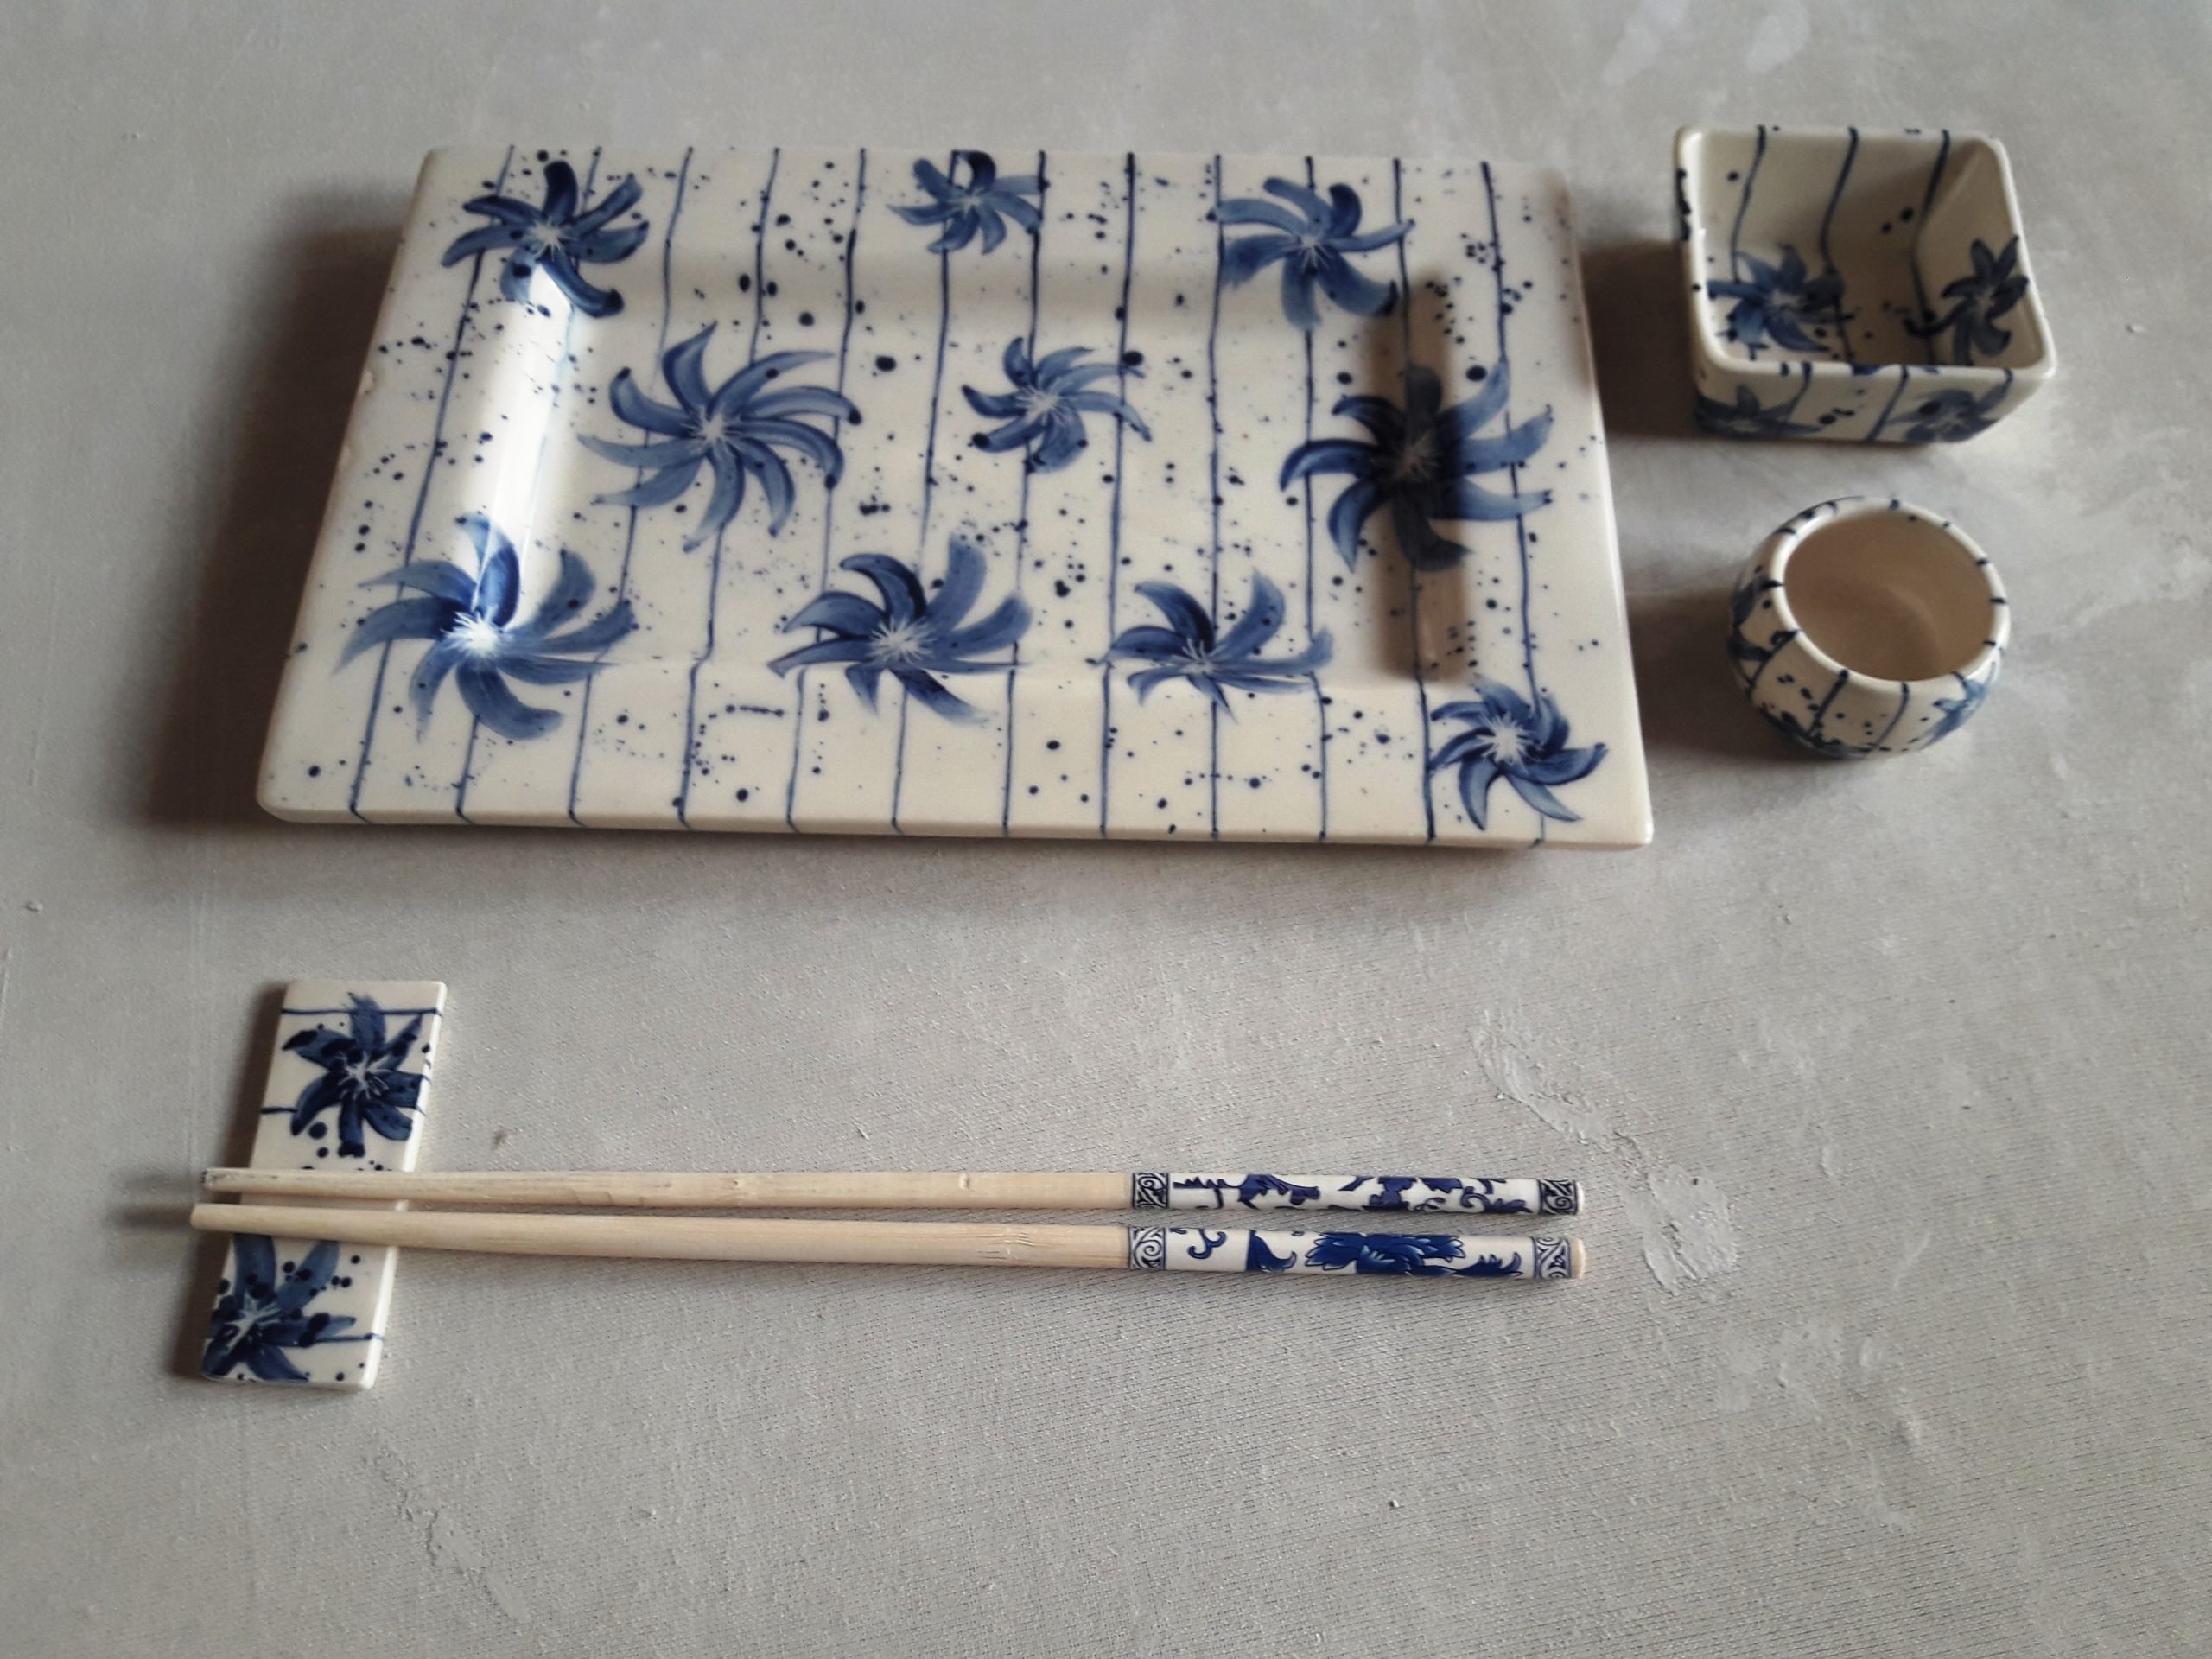 WORKSHOP CERÁMICA crea tu set de sushi – Consell 81 – Clases de cerámica